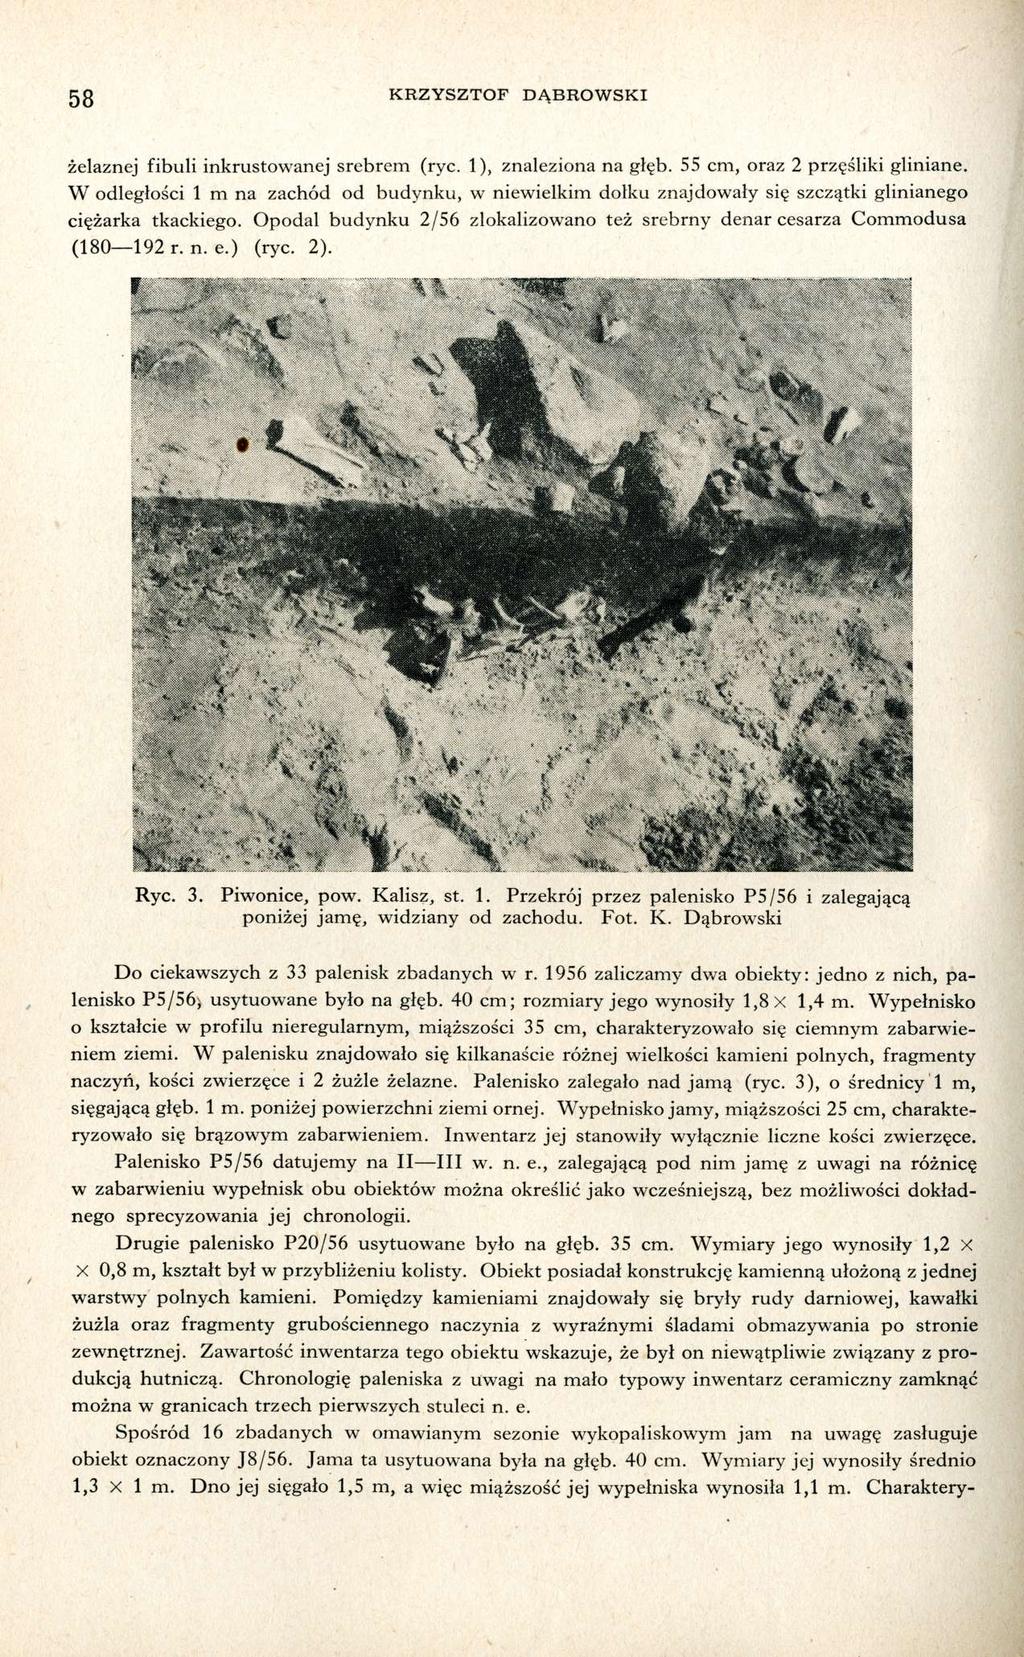 58 KRZYSZTOF DĄBROWSKI Spośród 16 zbadanych w omawianym sezonie wykopaliskowym jam na uwagę zasługuje obiekt oznaczony J8/56. Jama ta usytuowana była na głęb. 40 cm.